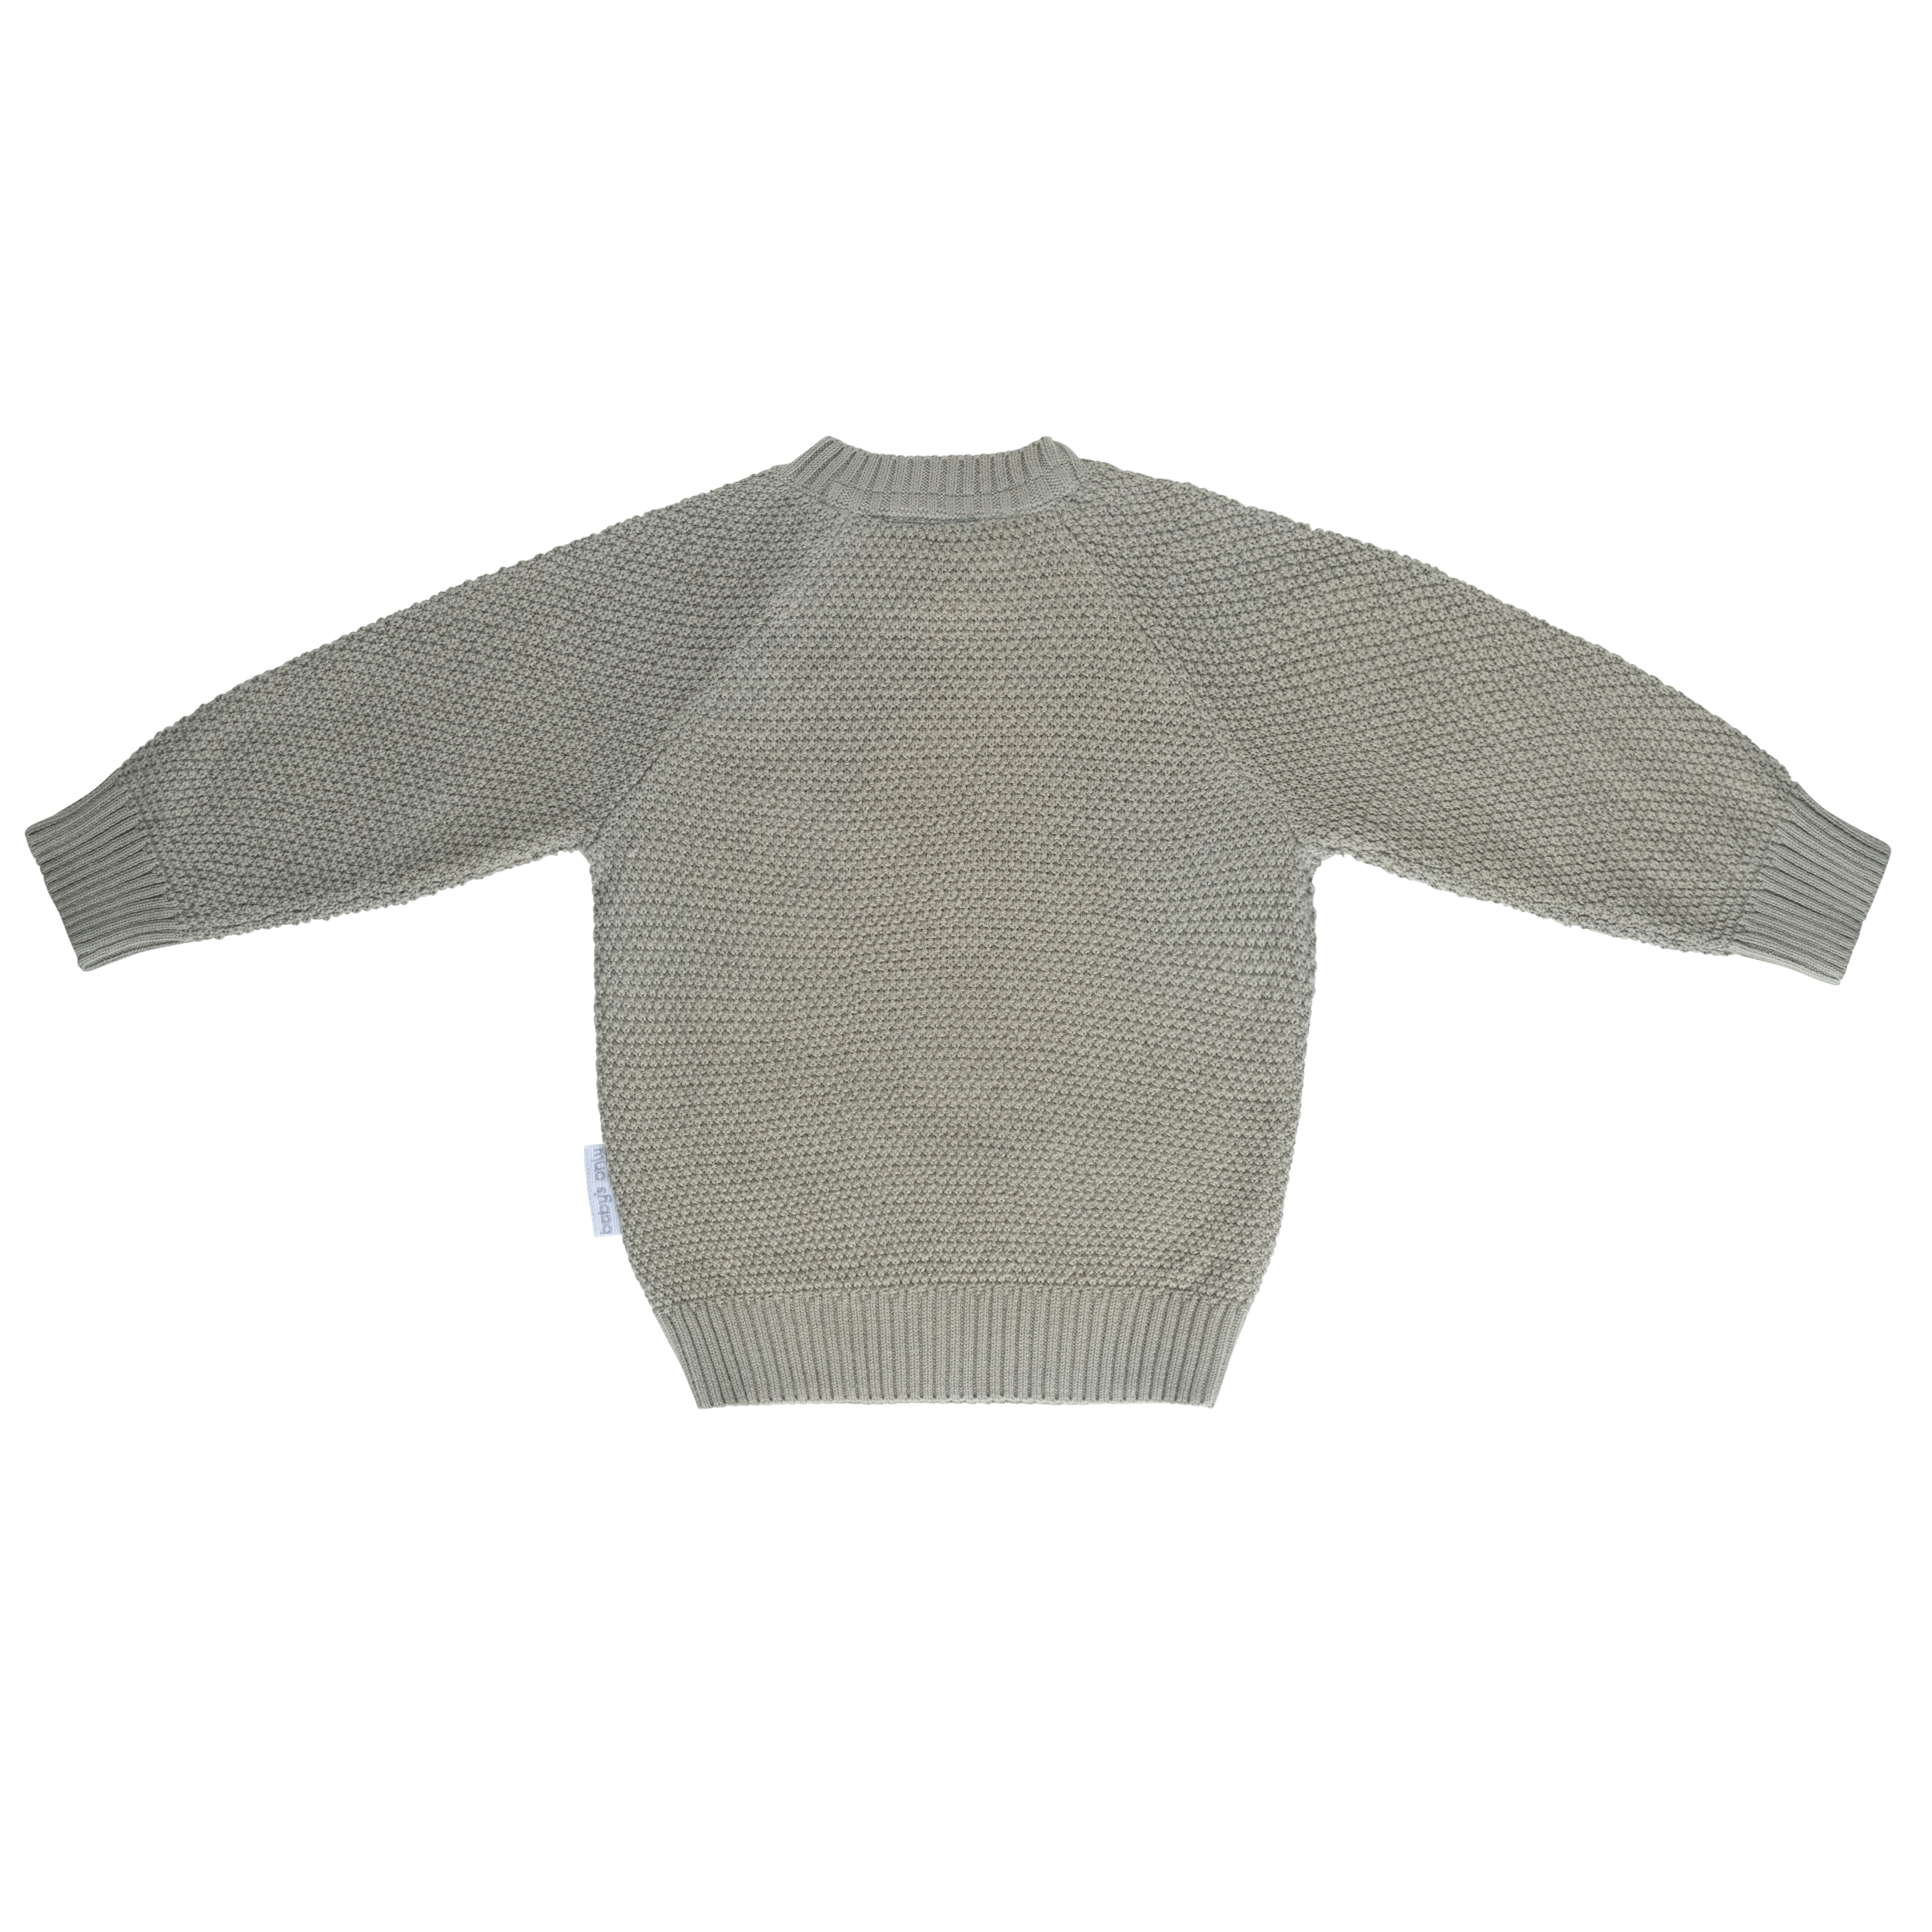 Sweater Willow urban green - 62